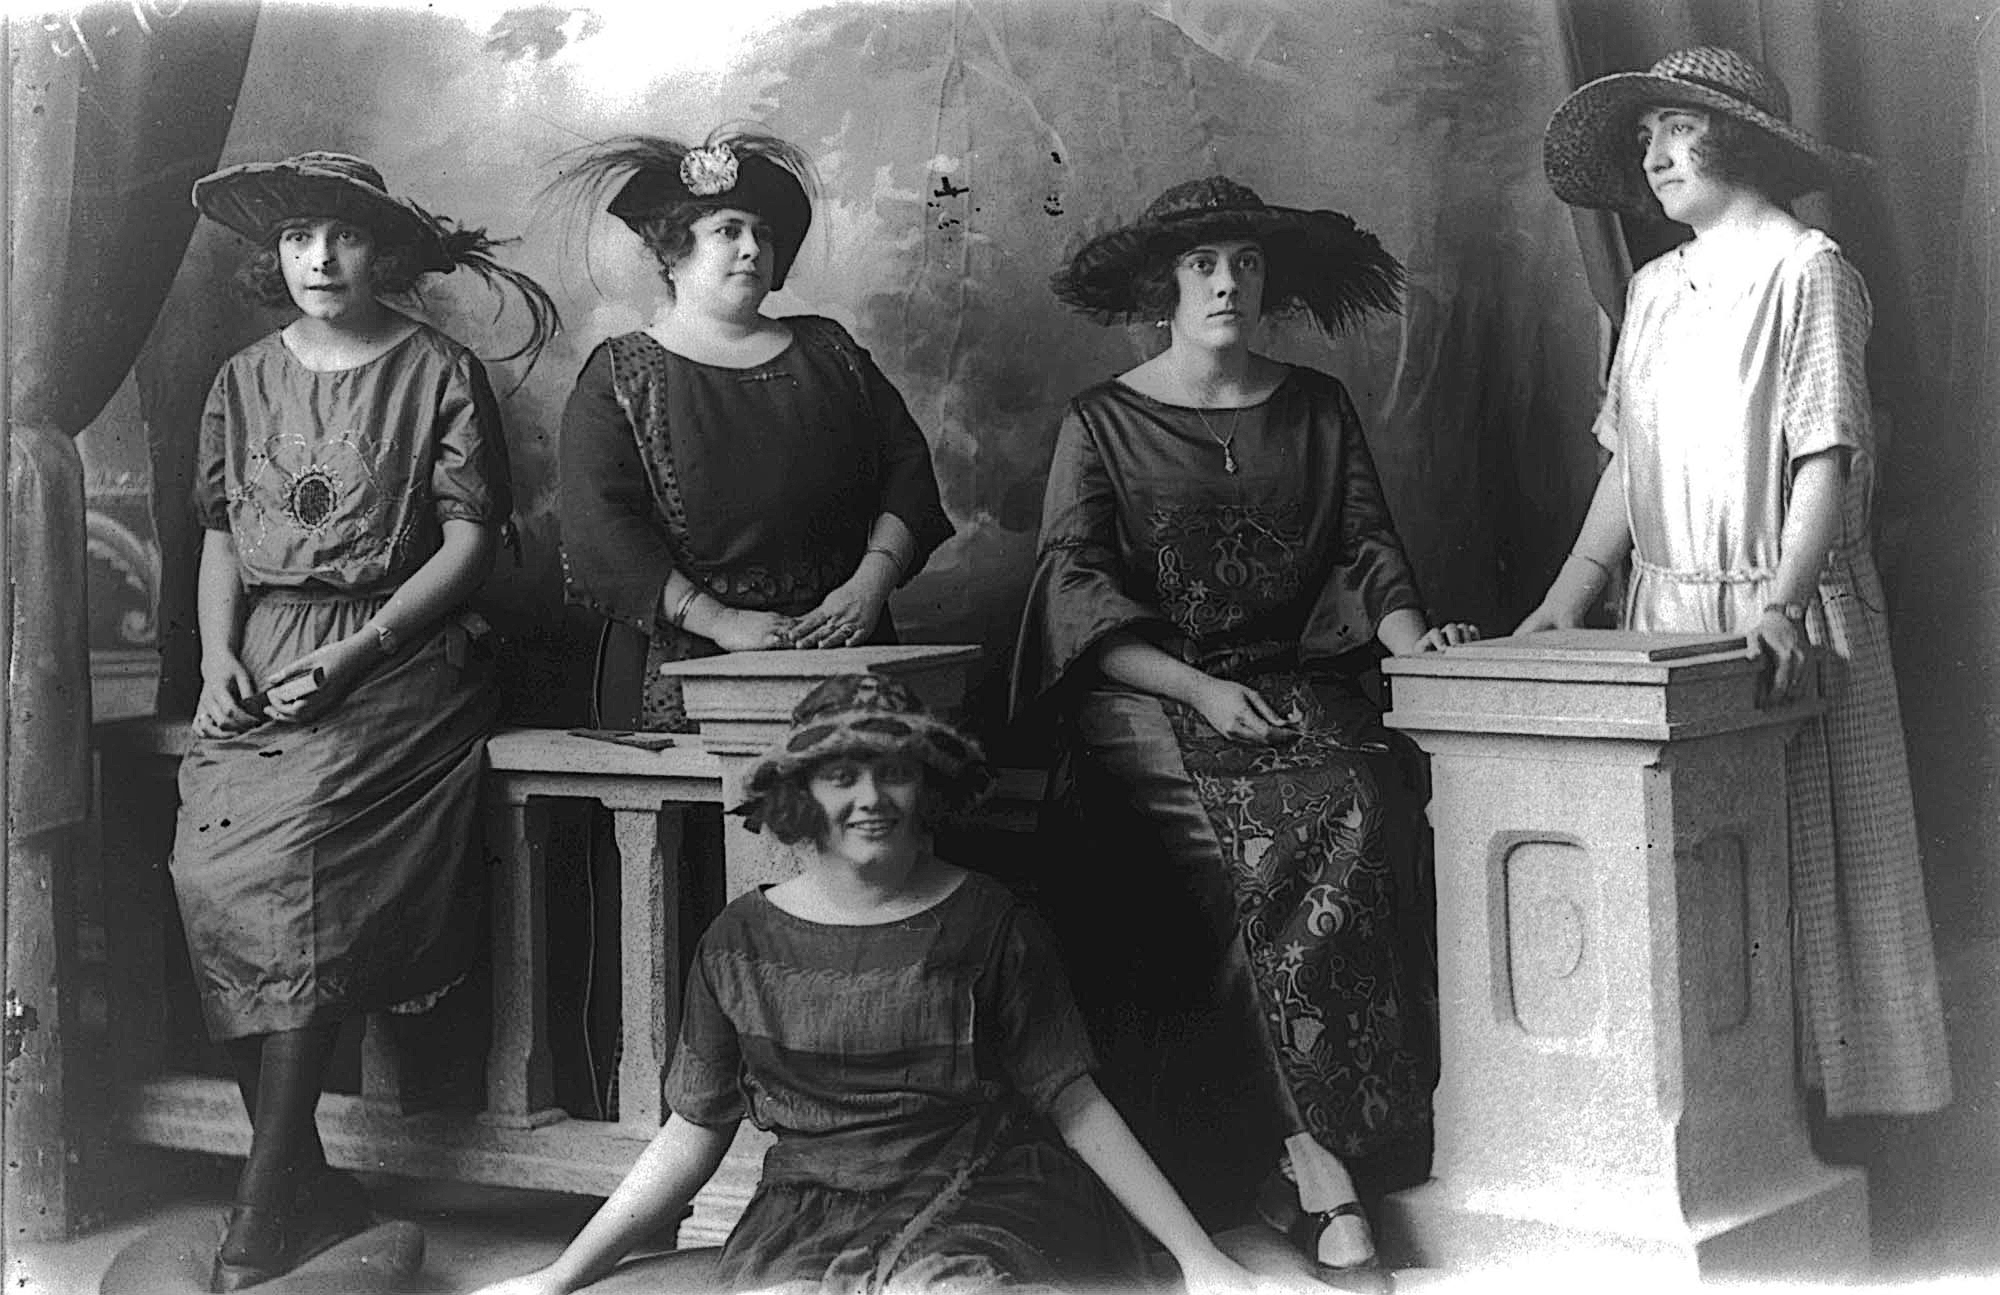 Autore sconosciuto, Ritratto in studio a gruppo di signore dellalta borghesia dellAvana, 1905 circa.